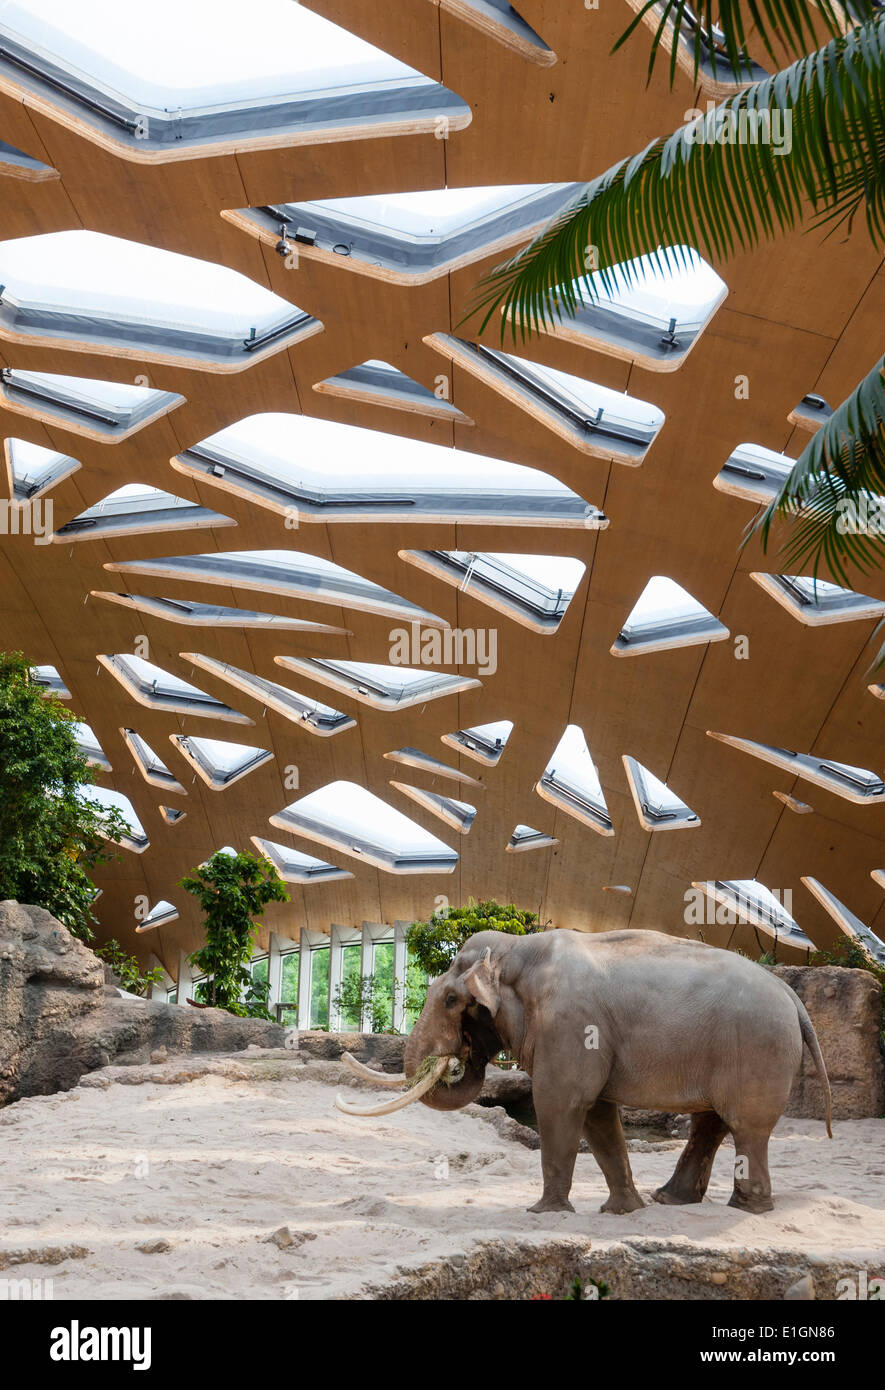 Zürich, Schweiz. 4. Juni 2014. Elefantenbullen "Maxi" der Zoo Zürich ist  ein Spaziergang sein neues Zuhause und neue Attraktion des Zoos: "Kaeng  Krachan" Elephant park, die 10'000 Quadratmeter künstliche Landschaft unter  einer